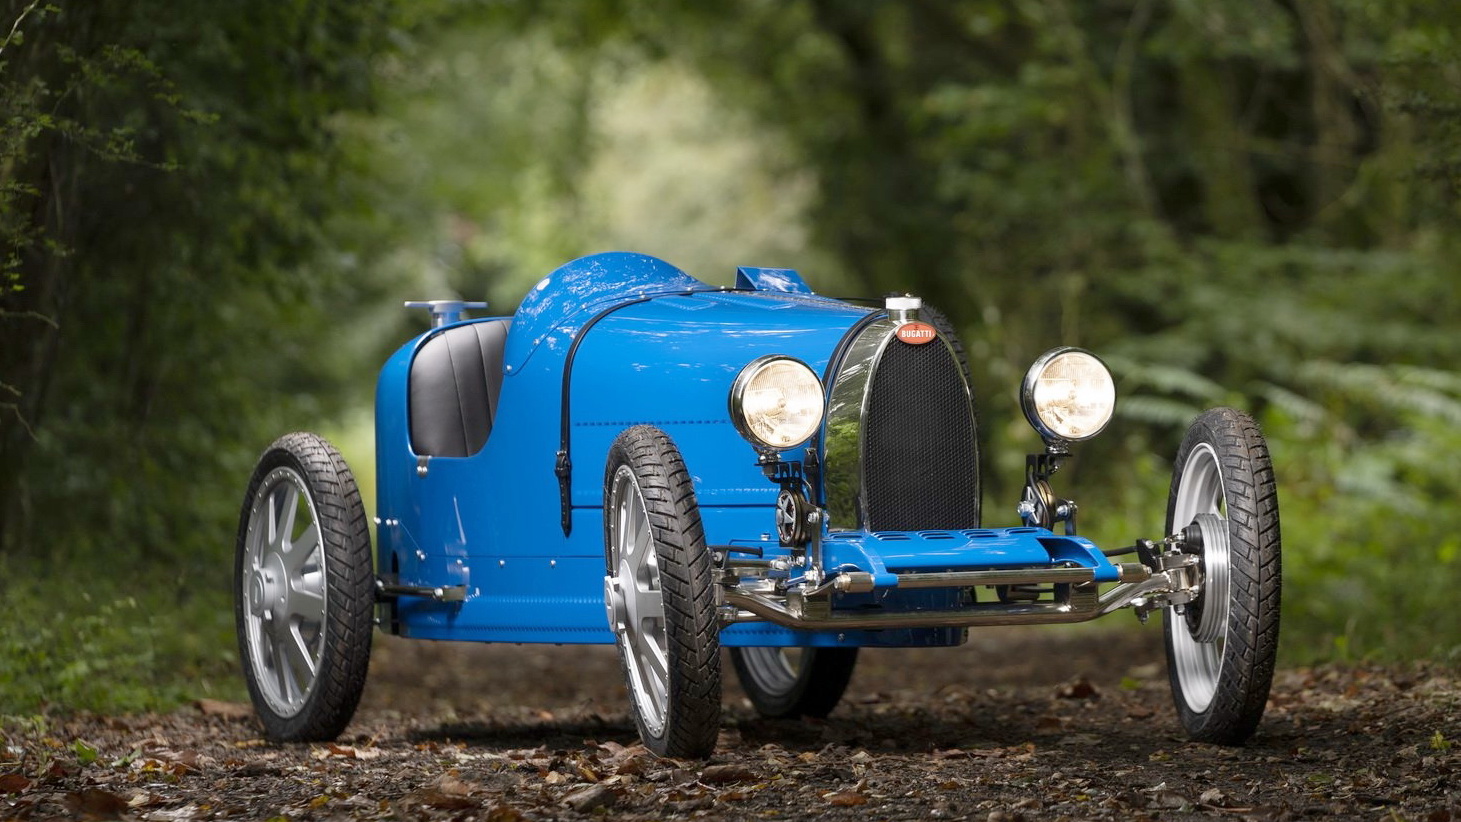 Αυτή η Bugatti σε κάνει να θέλεις να γίνεις και πάλι παιδί! [pics]